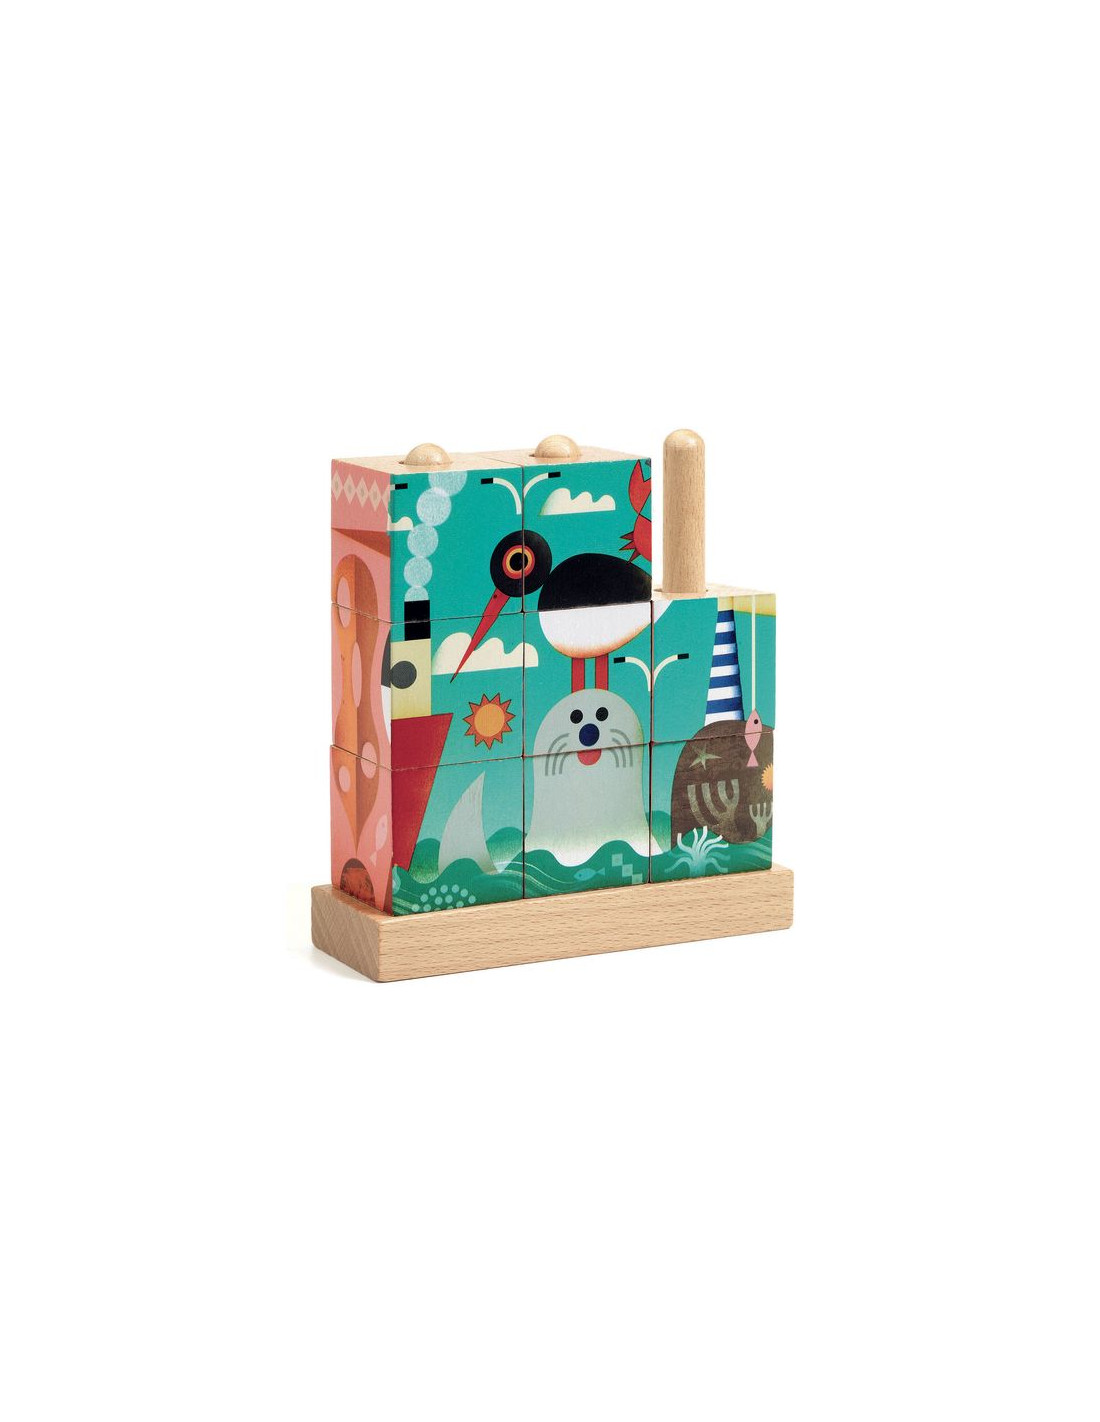 Puzzle 9 cubes en bois : Puzz-Up : Sea - Jeux et jouets Djeco